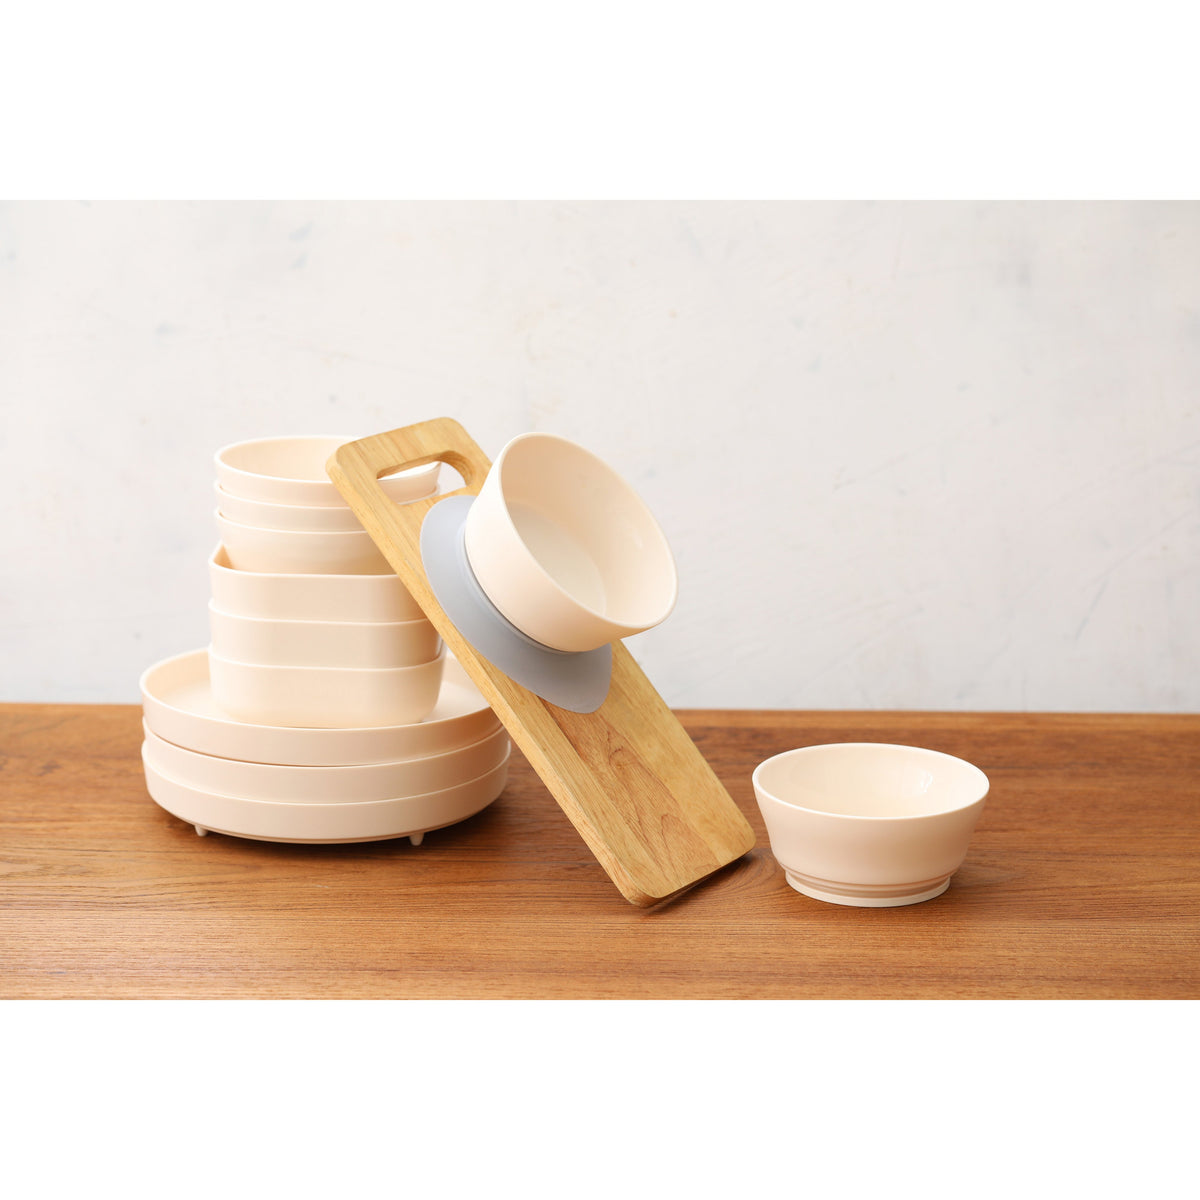 miniware-snack-bowl-set-pla-suction-bowl-vanilla-silicone-cover-in-aqua- (9)